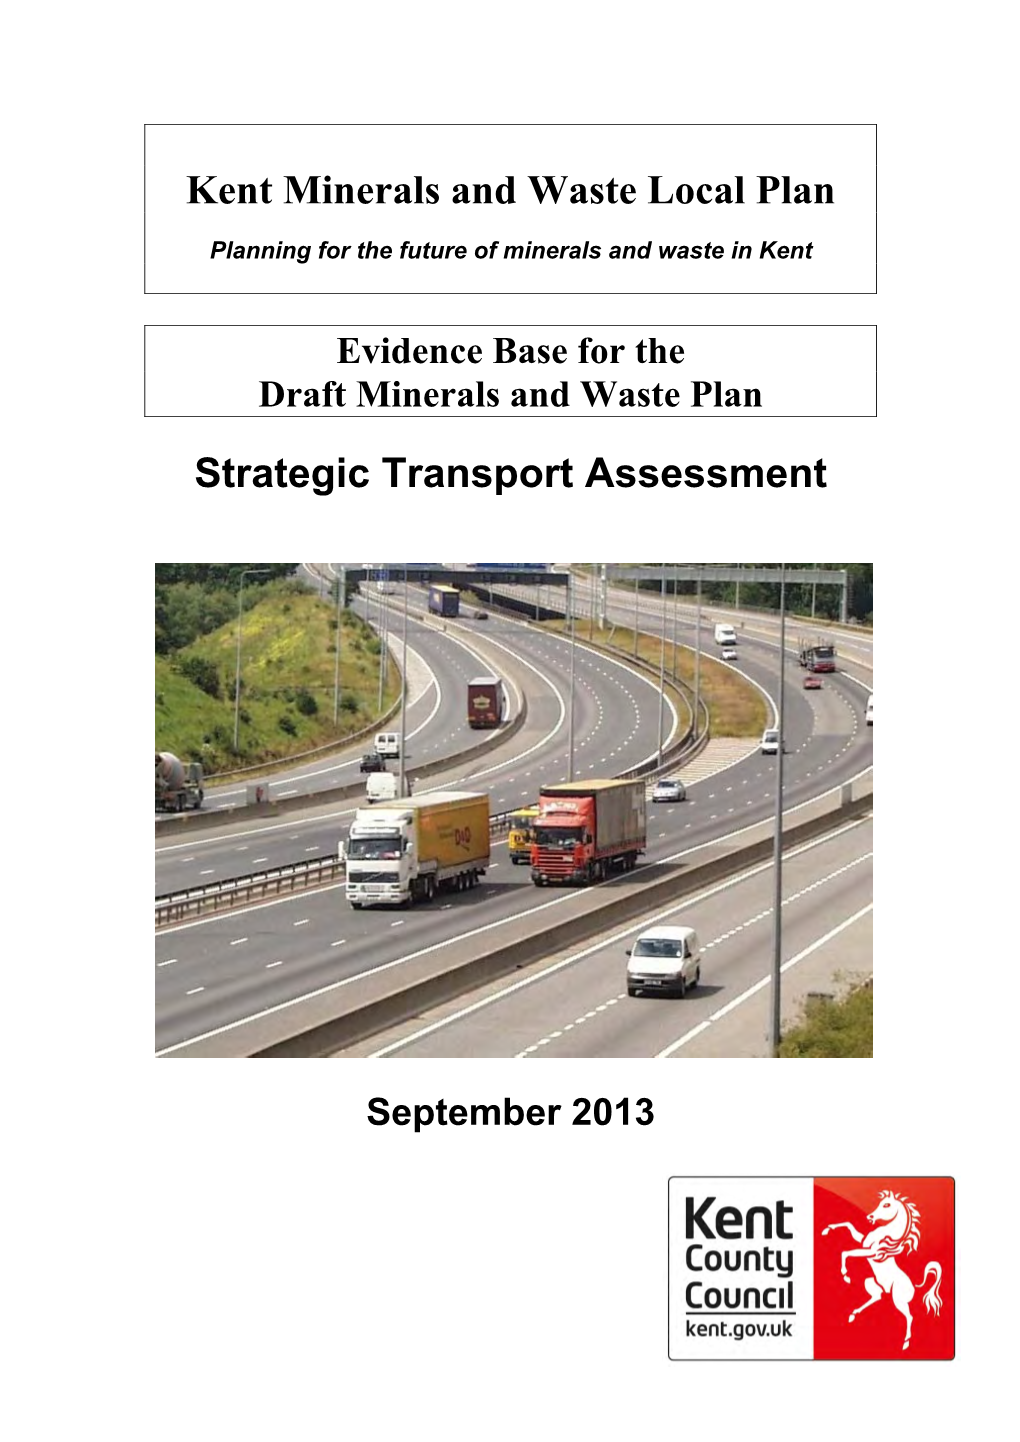 Strategic Transport Assessment